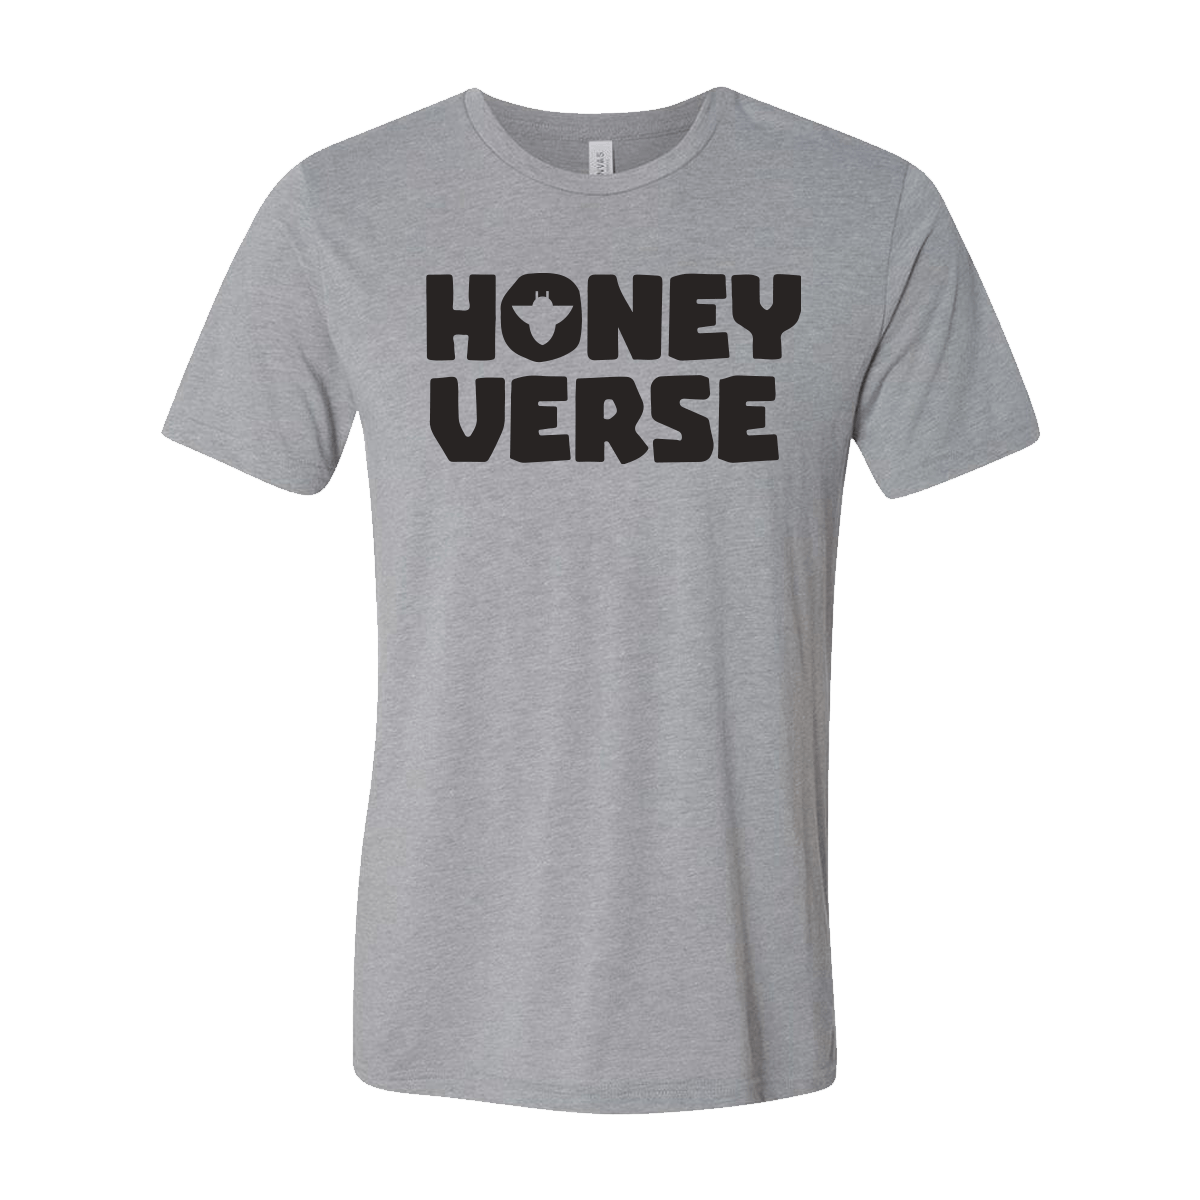 Honeyverse Tee - Honeyland